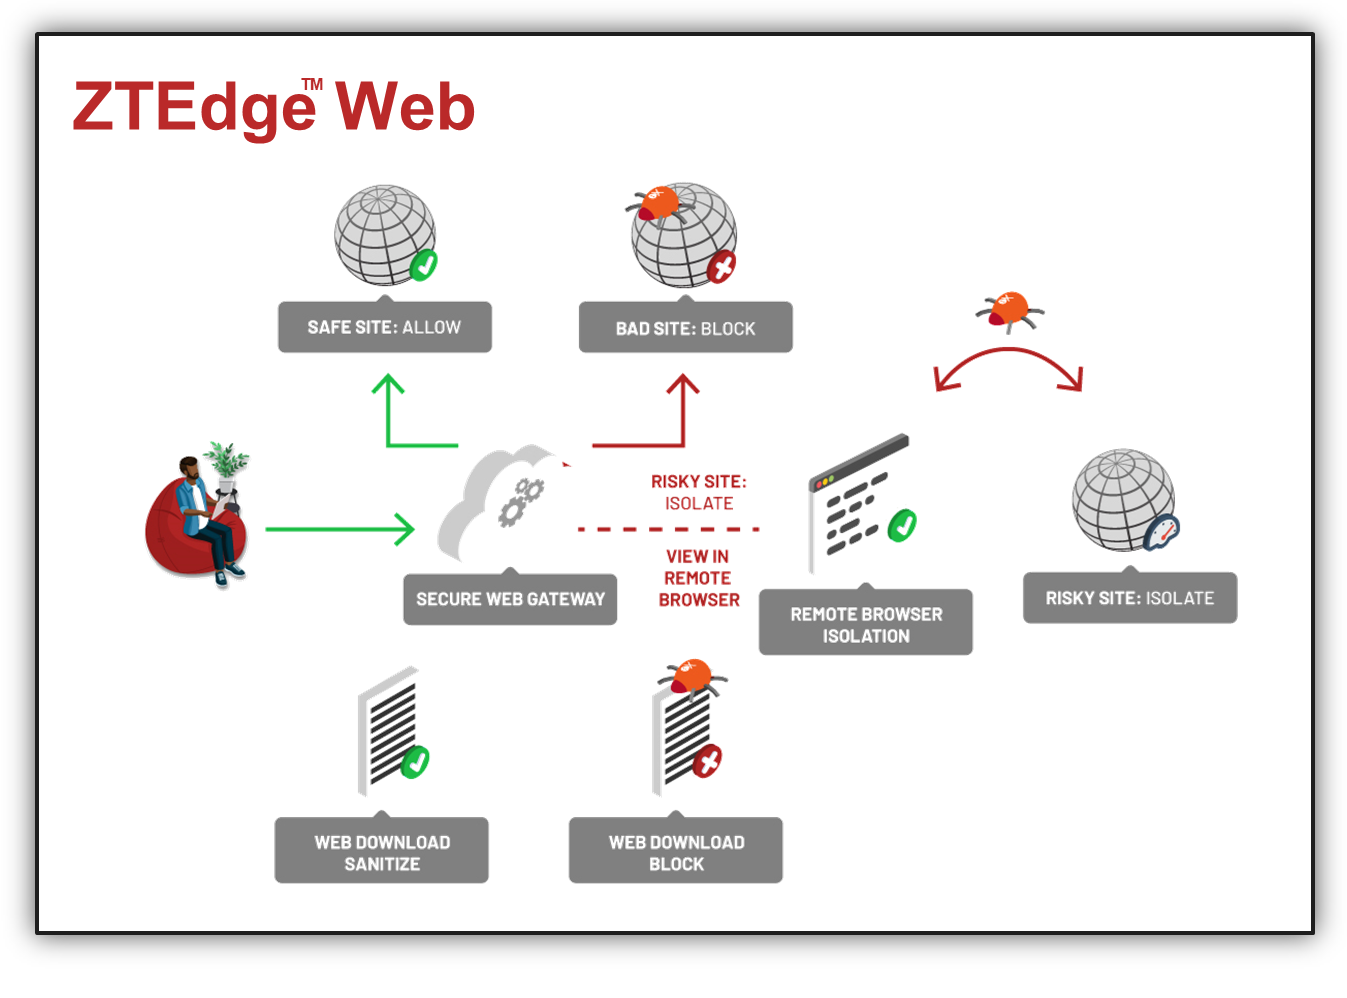 ZTEdge Web Flow (1)